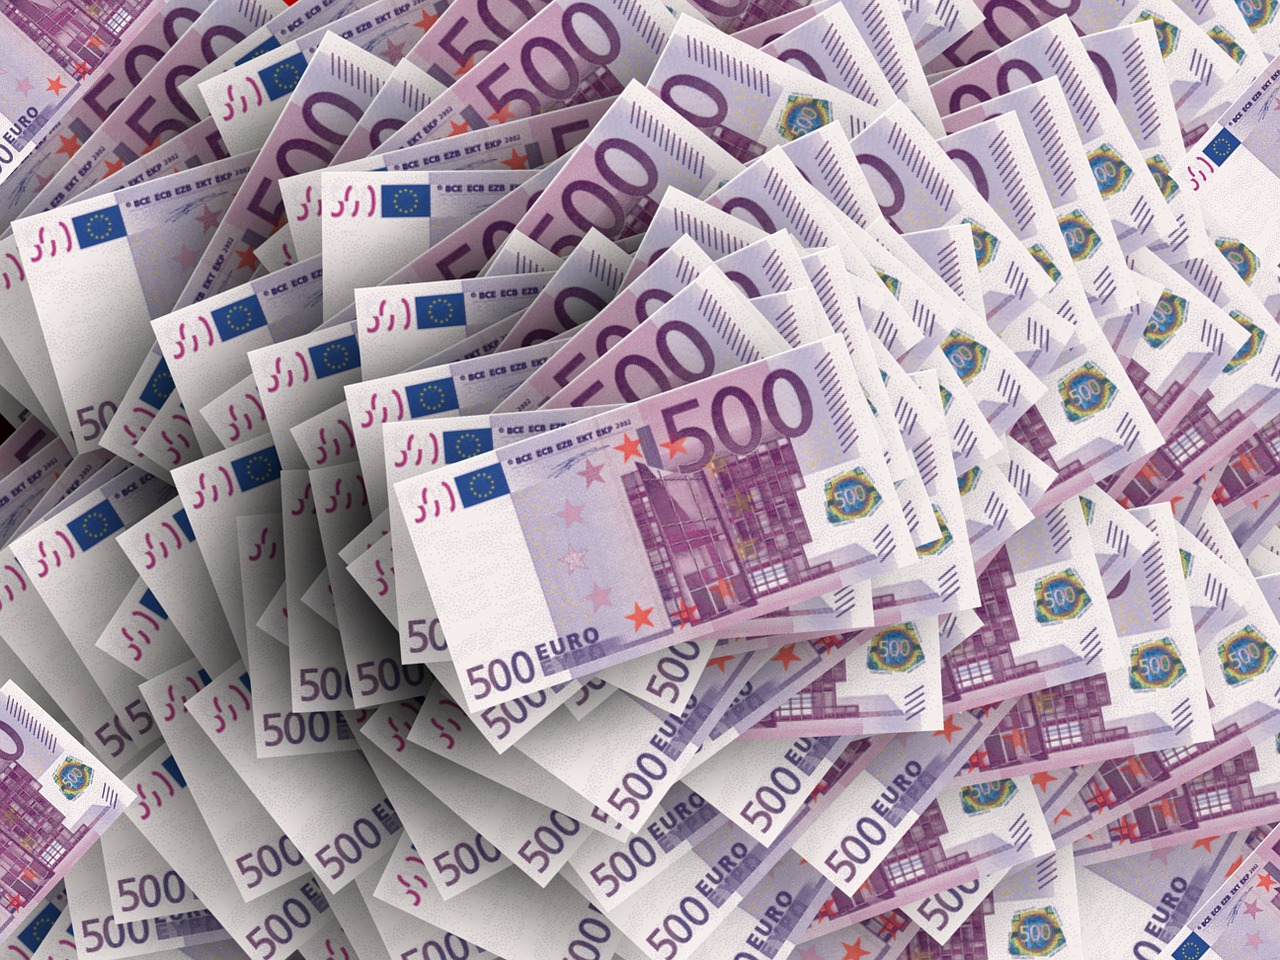 Viaceré strany zverejnili transparentné účty, minúť môžu 3 milióny eur